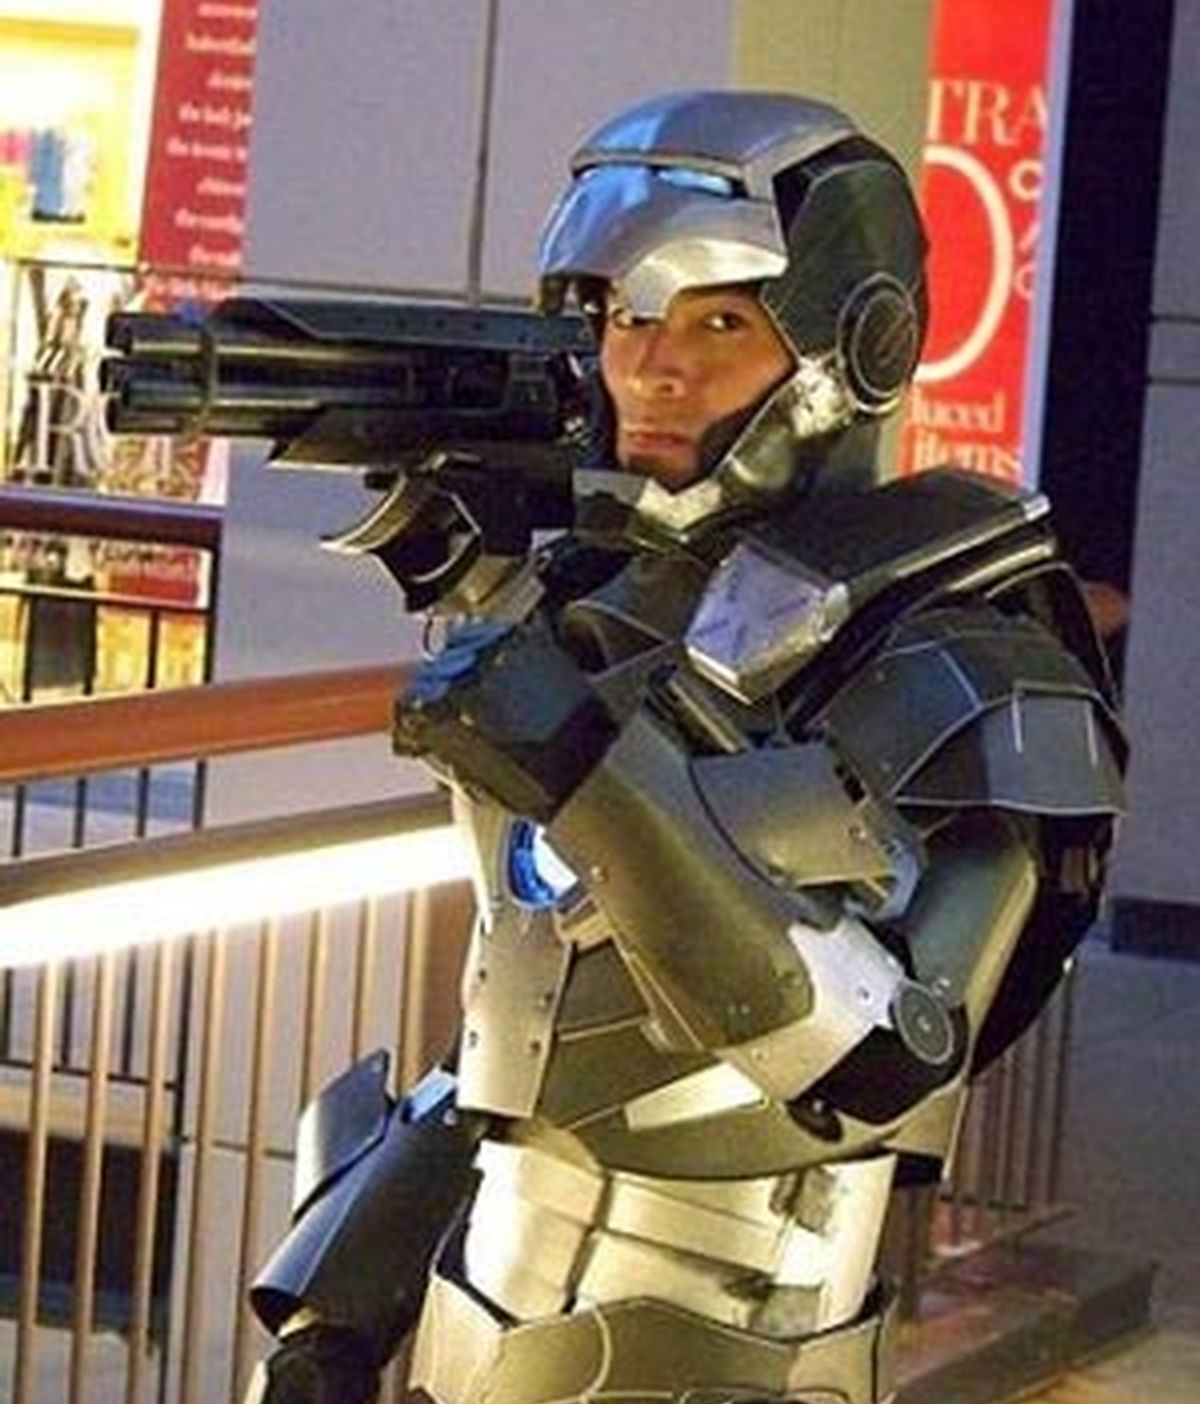 Anthony Le con el traje que se ha construido similar al del personaje del Universo Marvel 'War Machine', compañero de Iron Man.